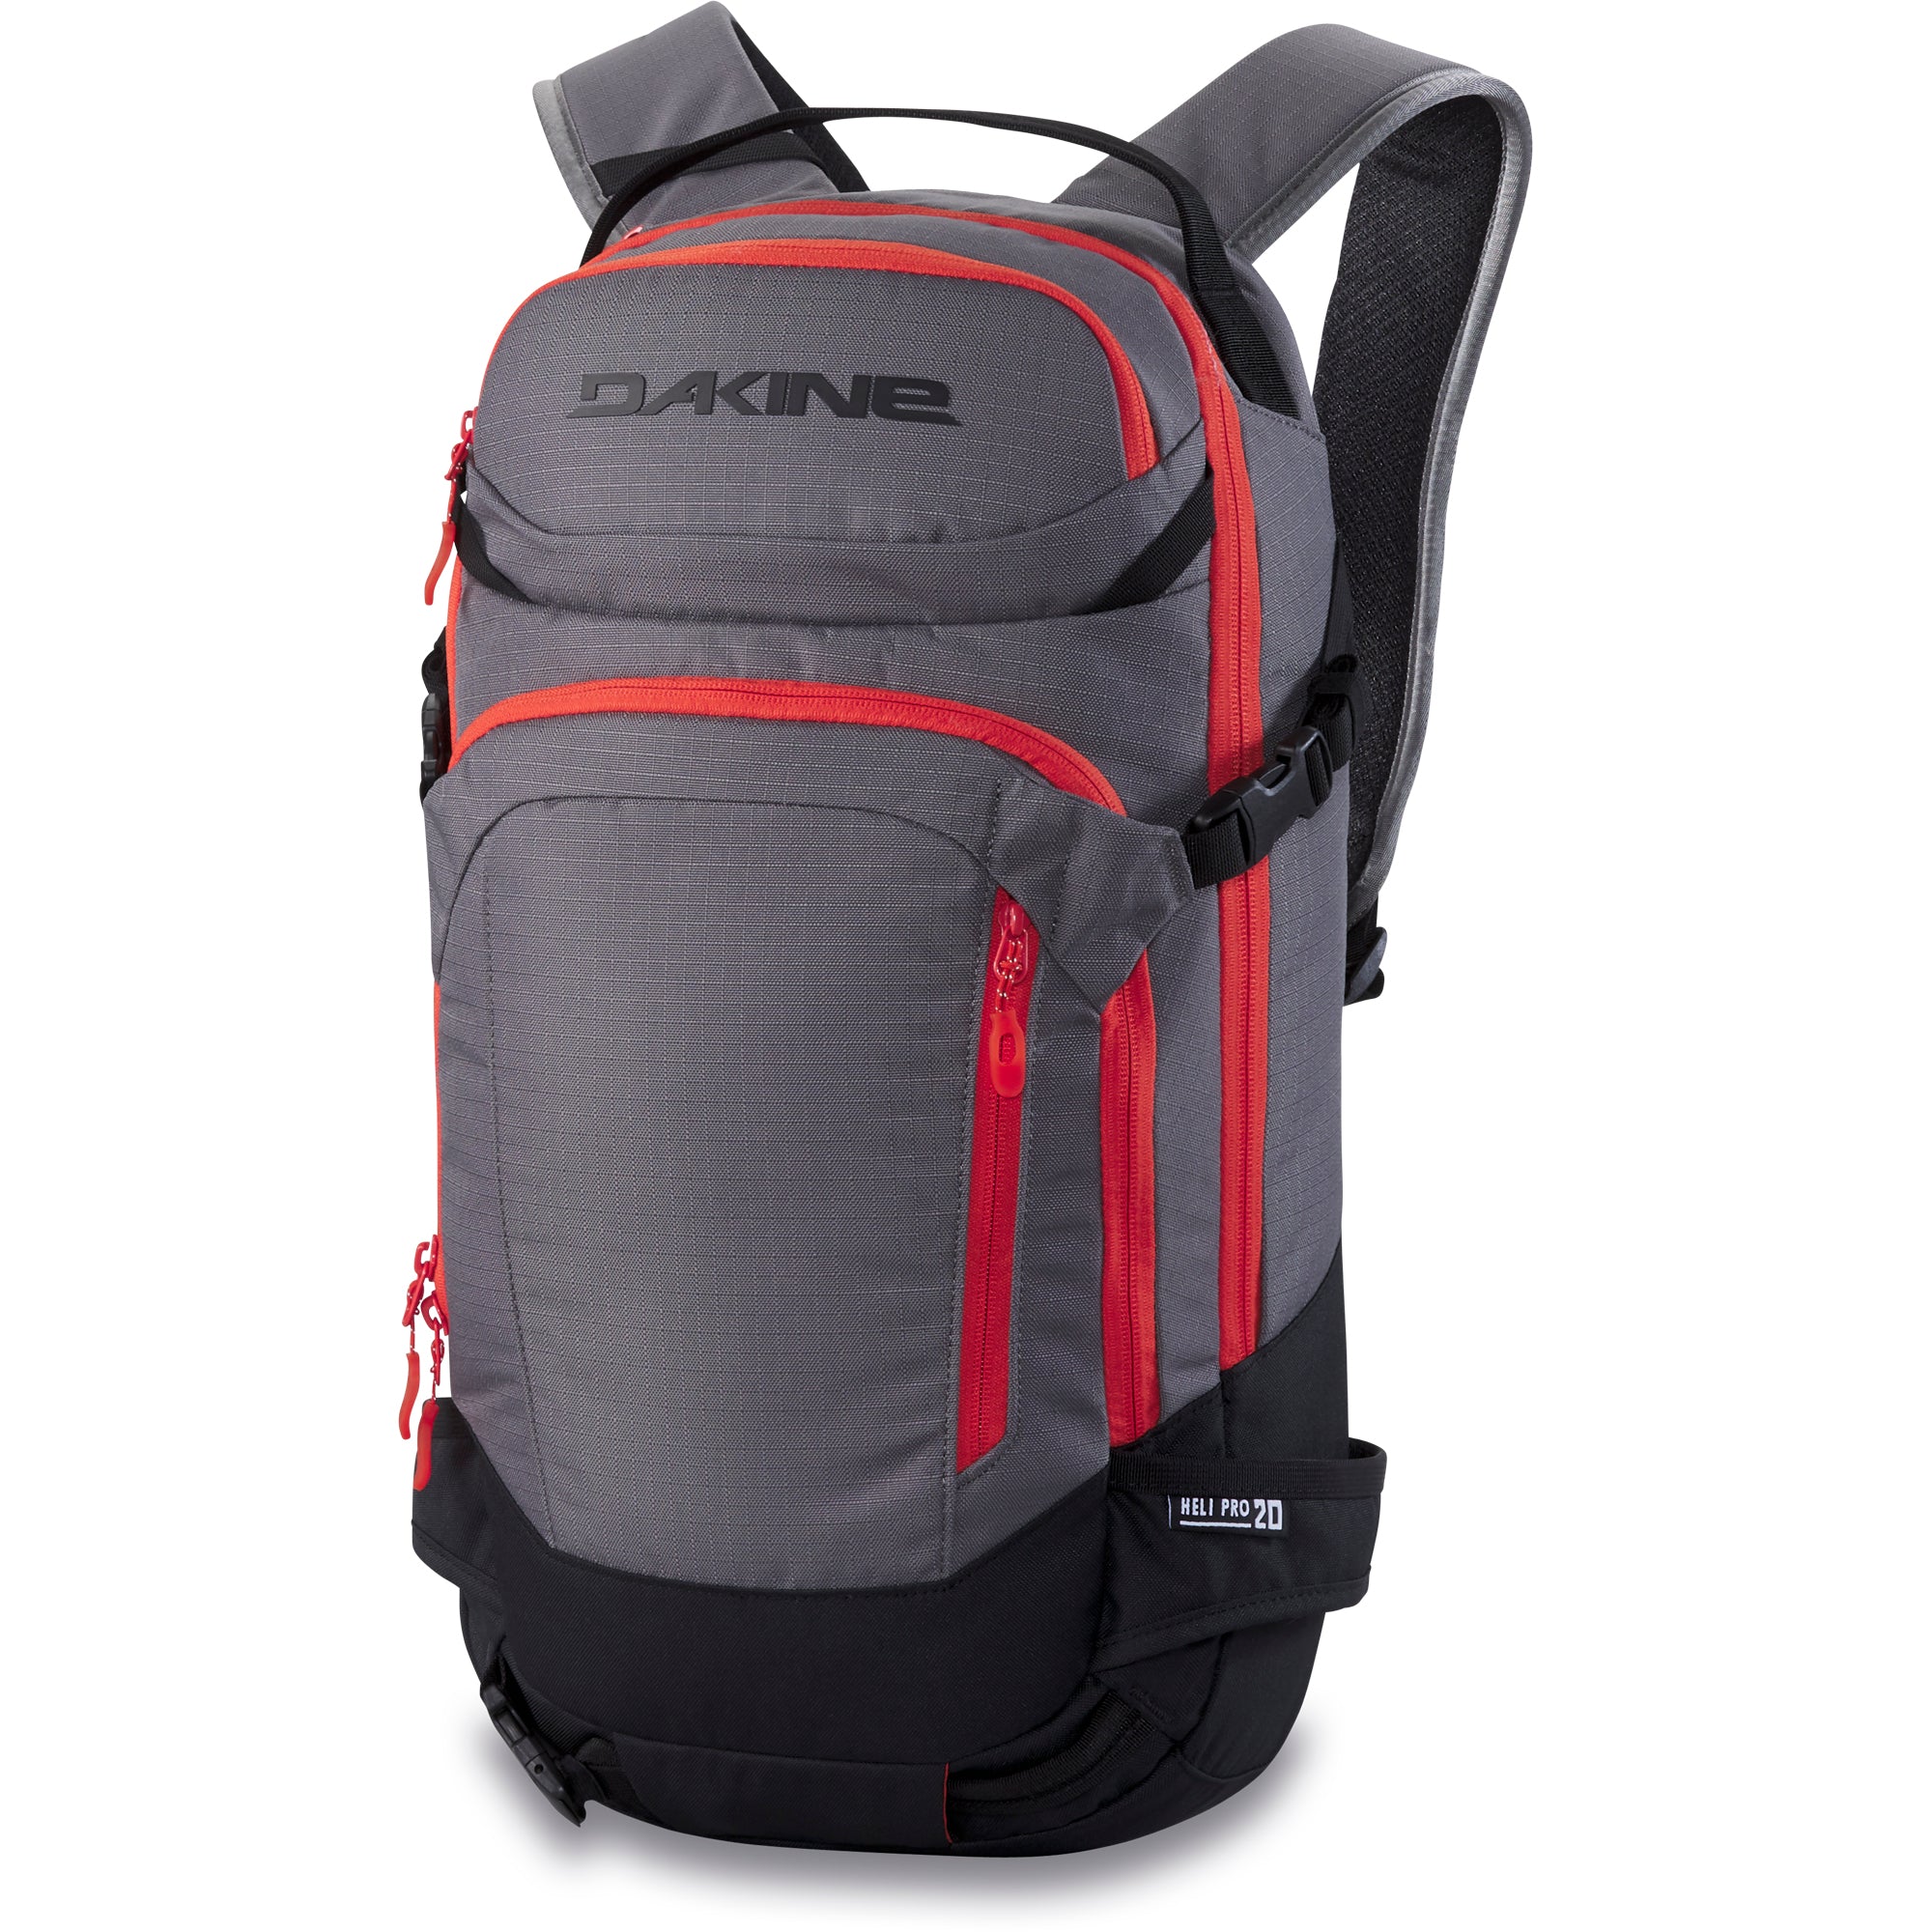 Dakine Heli Pro 20L backpack steel grey